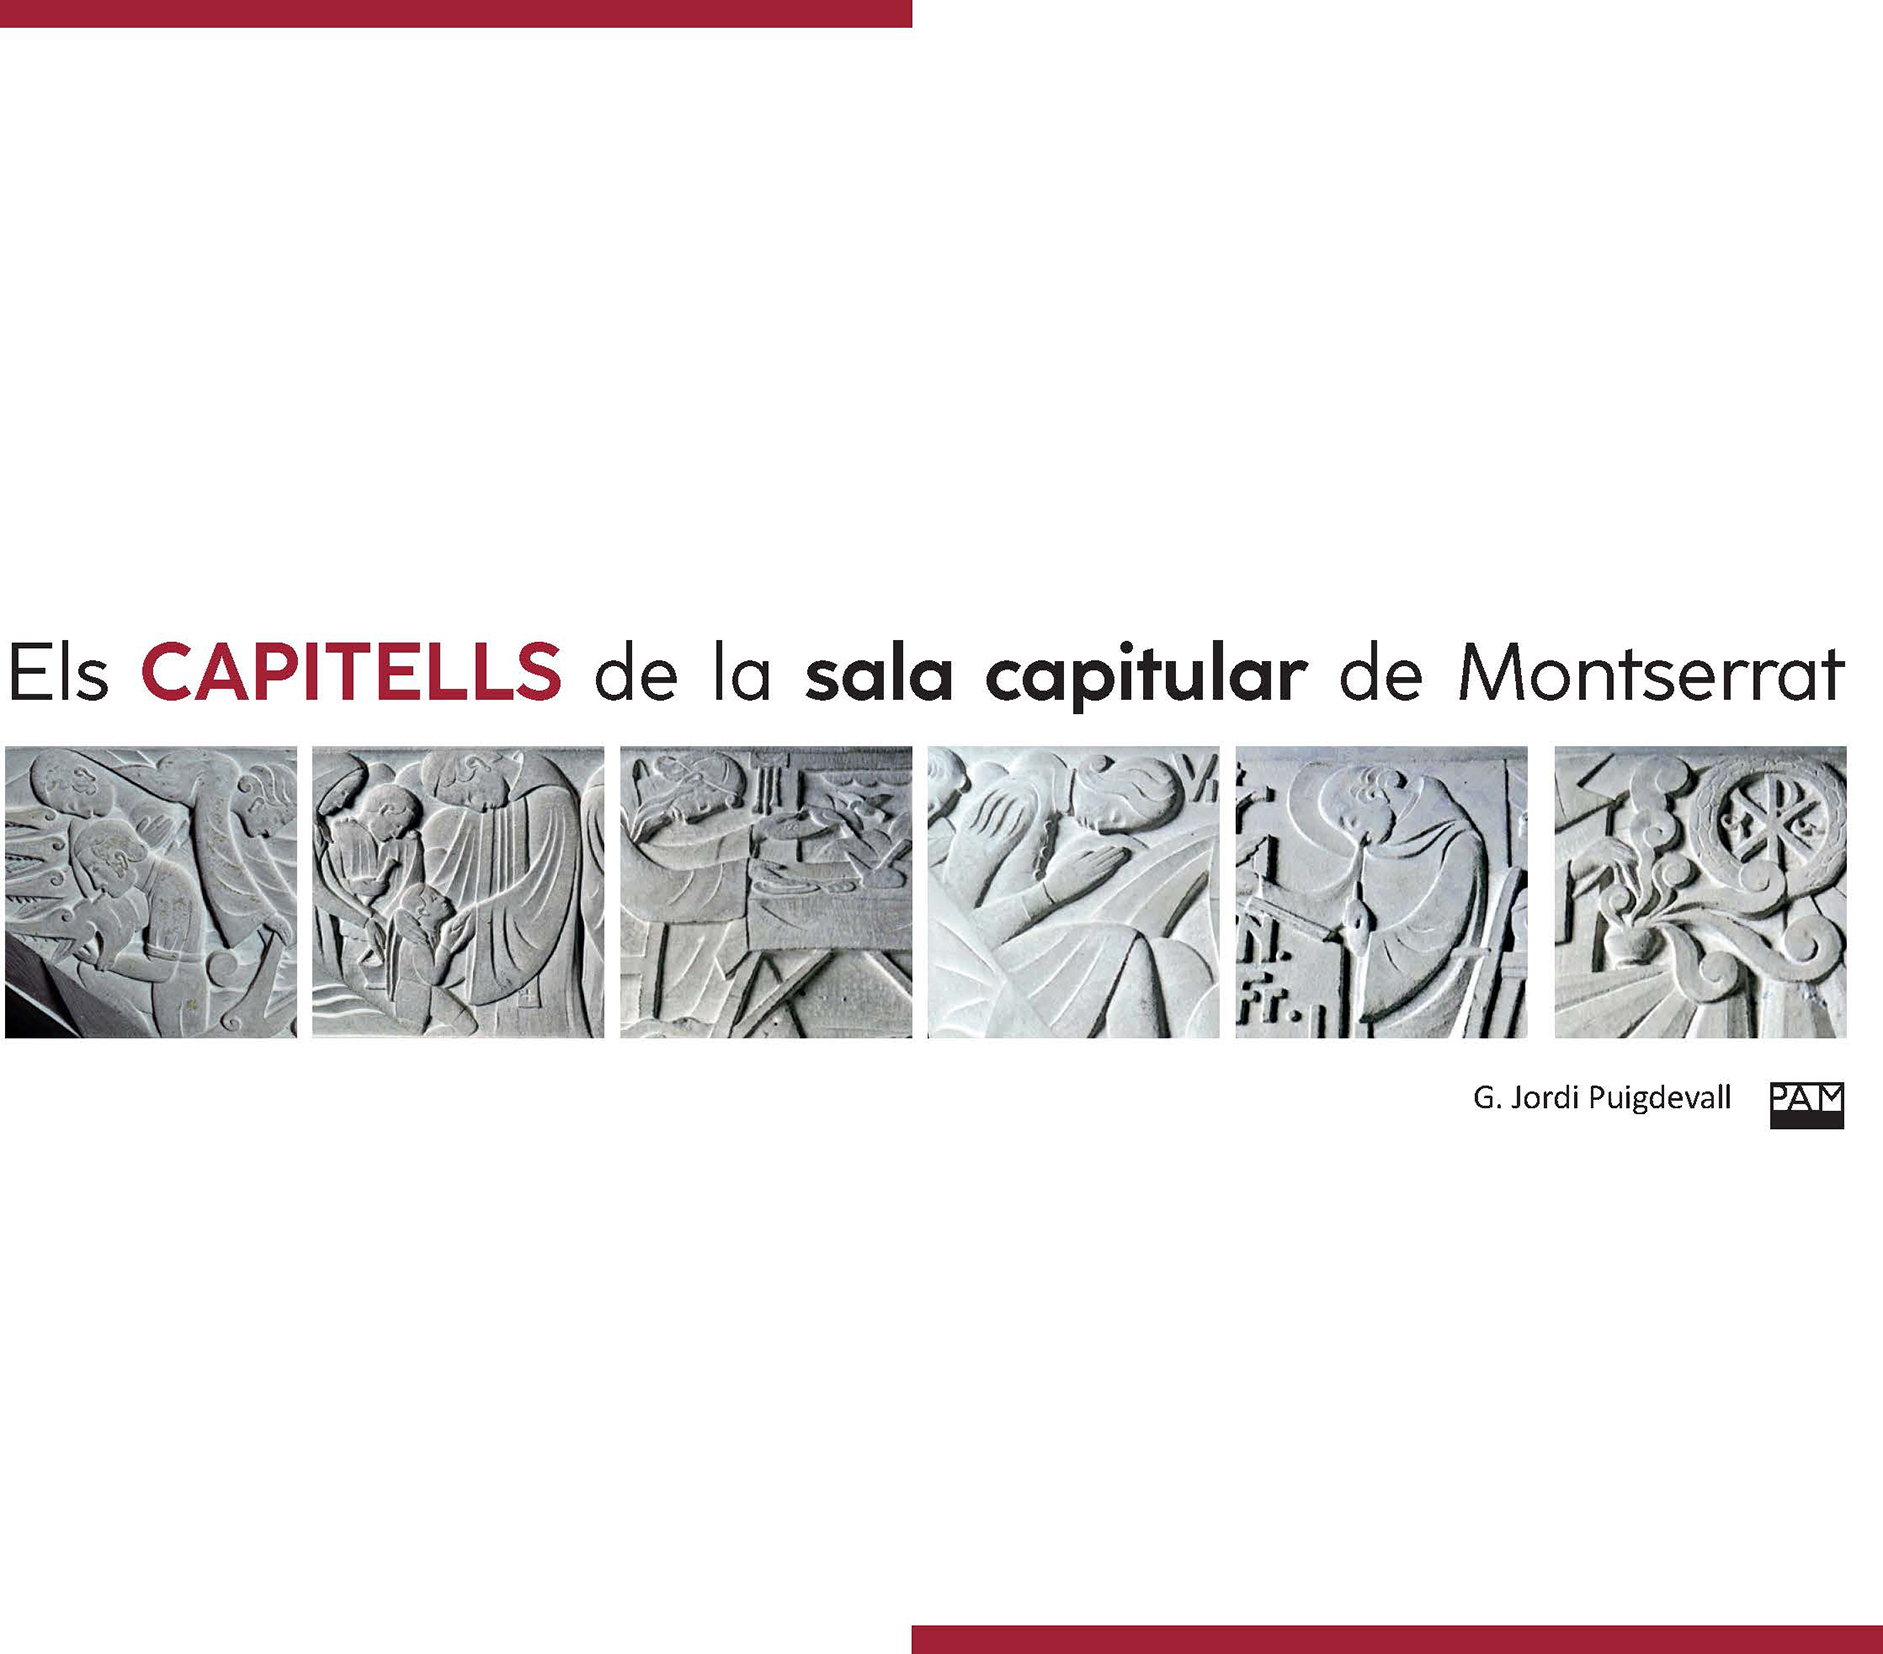 Els capitells de la sala capitular de Montserrat